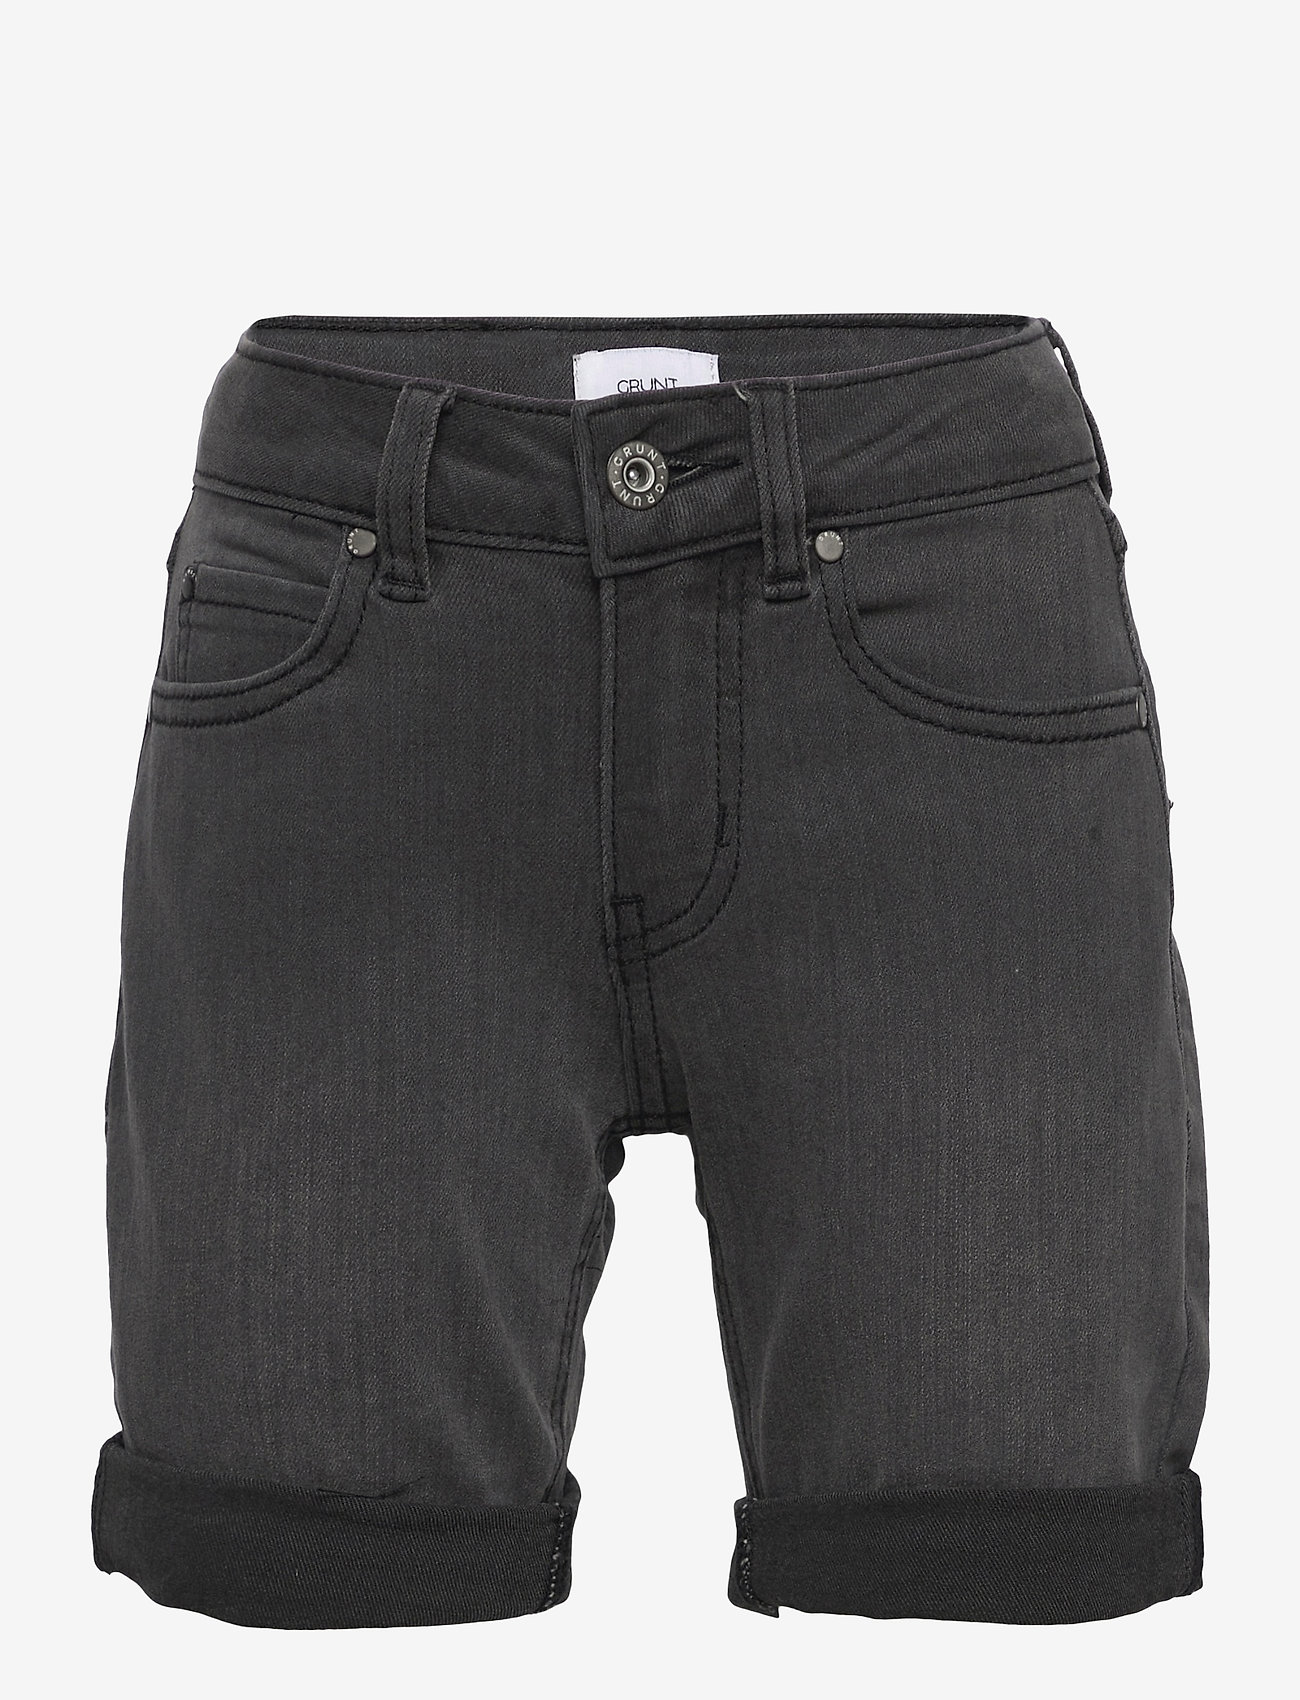 Grunt - Stay Vintage Grey Shorts - gode sommertilbud - vintage grey - 0